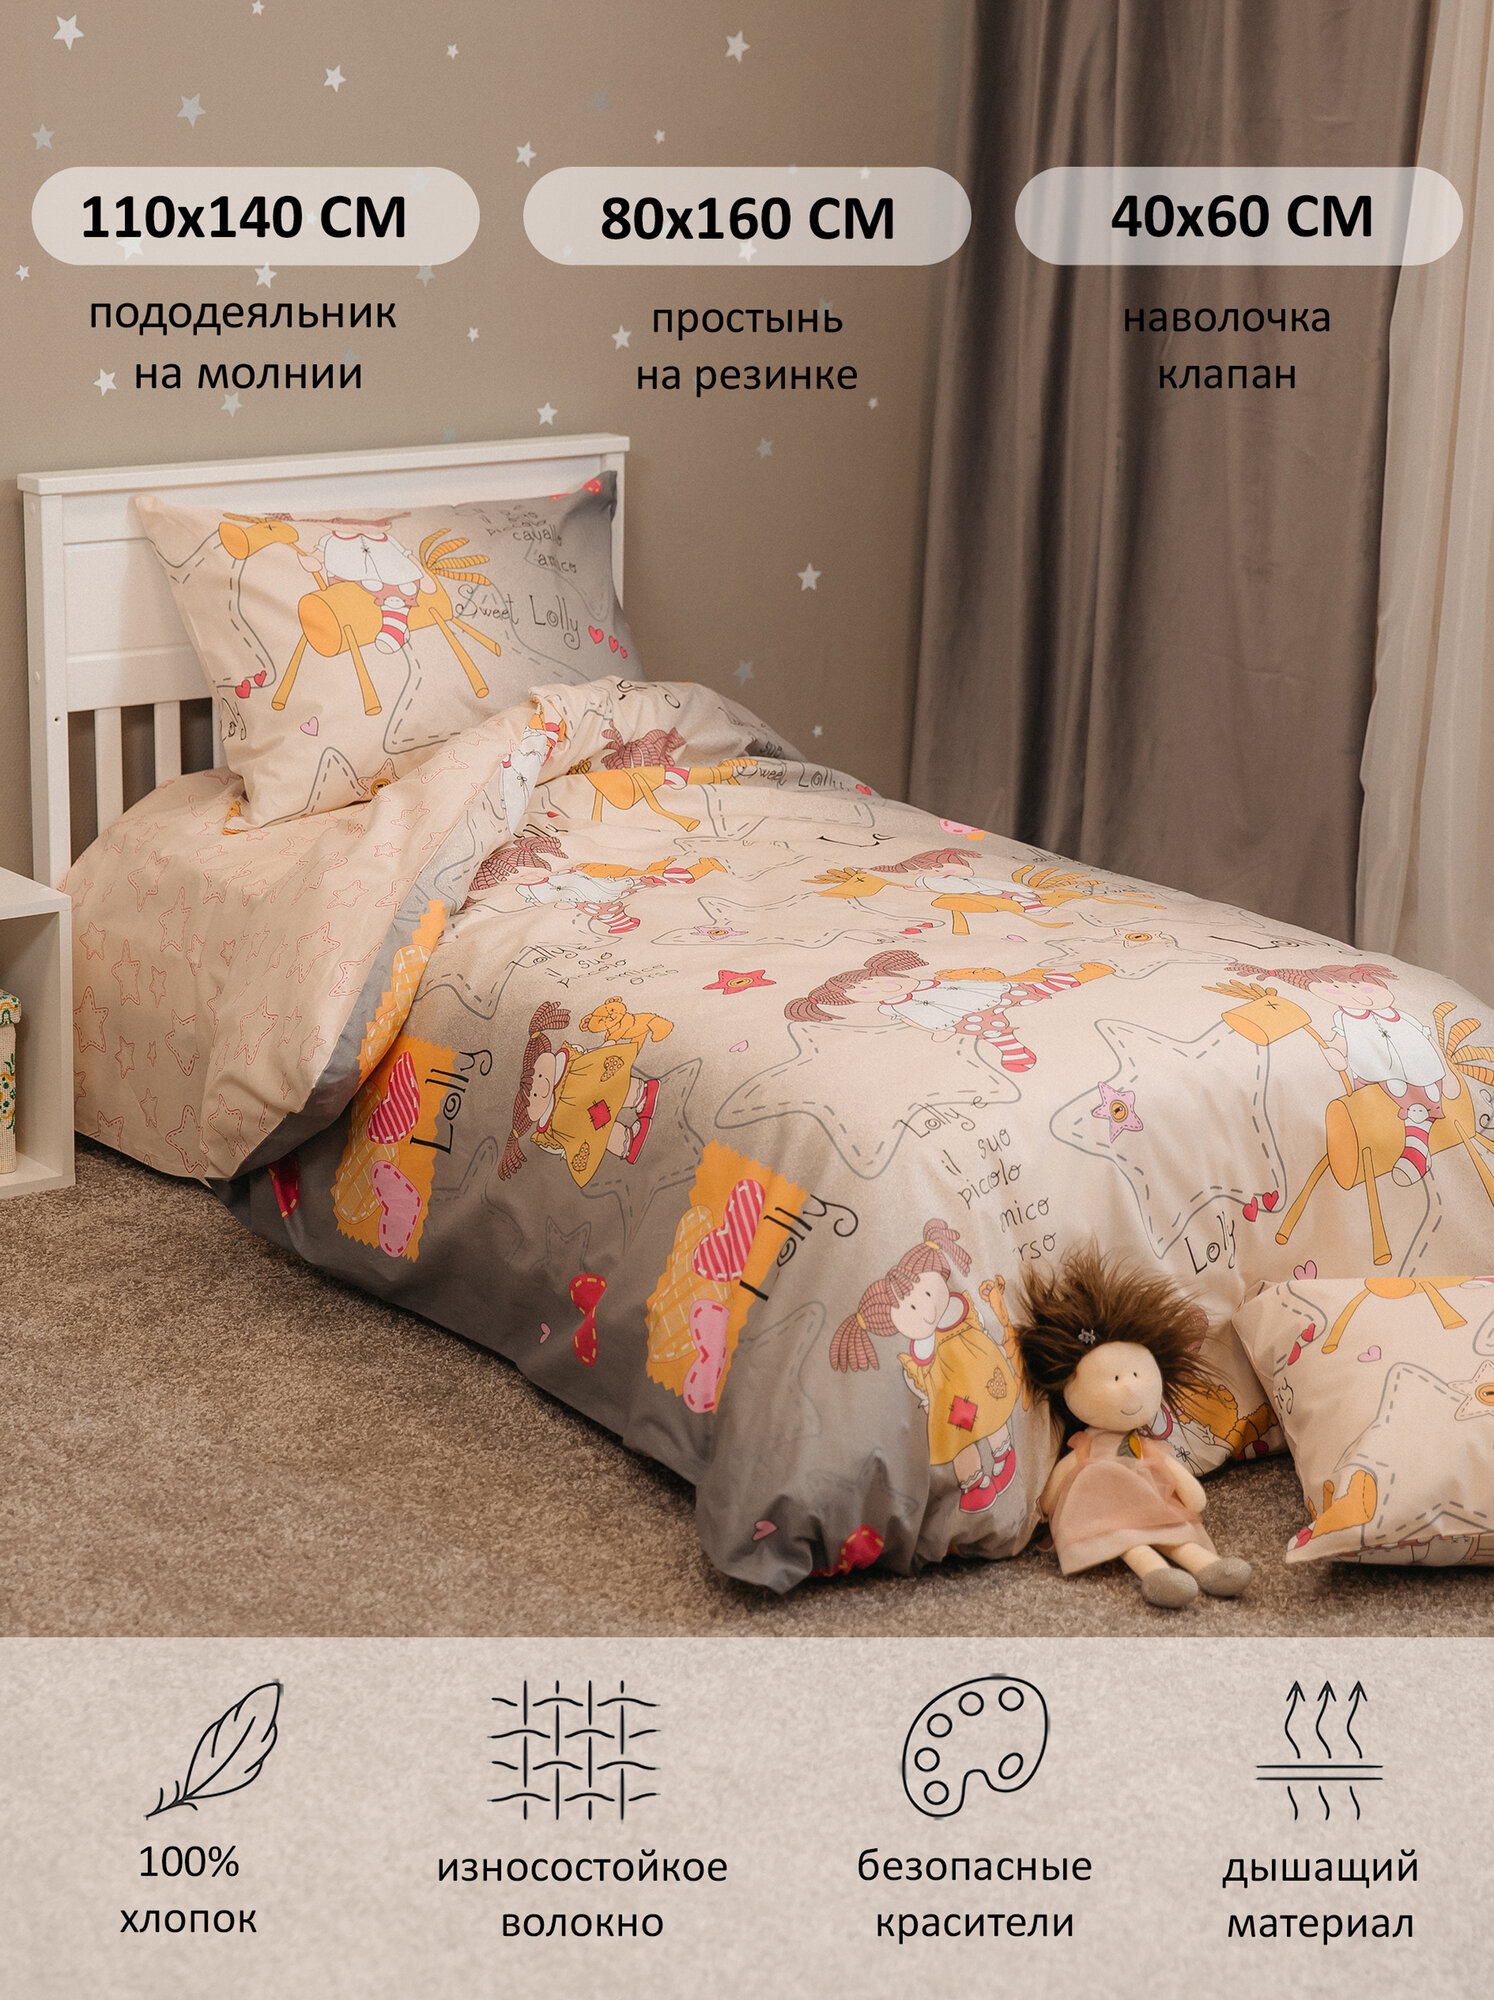 Комплект детского постельного белья Соня" для девочек "Bambino Mio " Простынь 80х160 на резинке